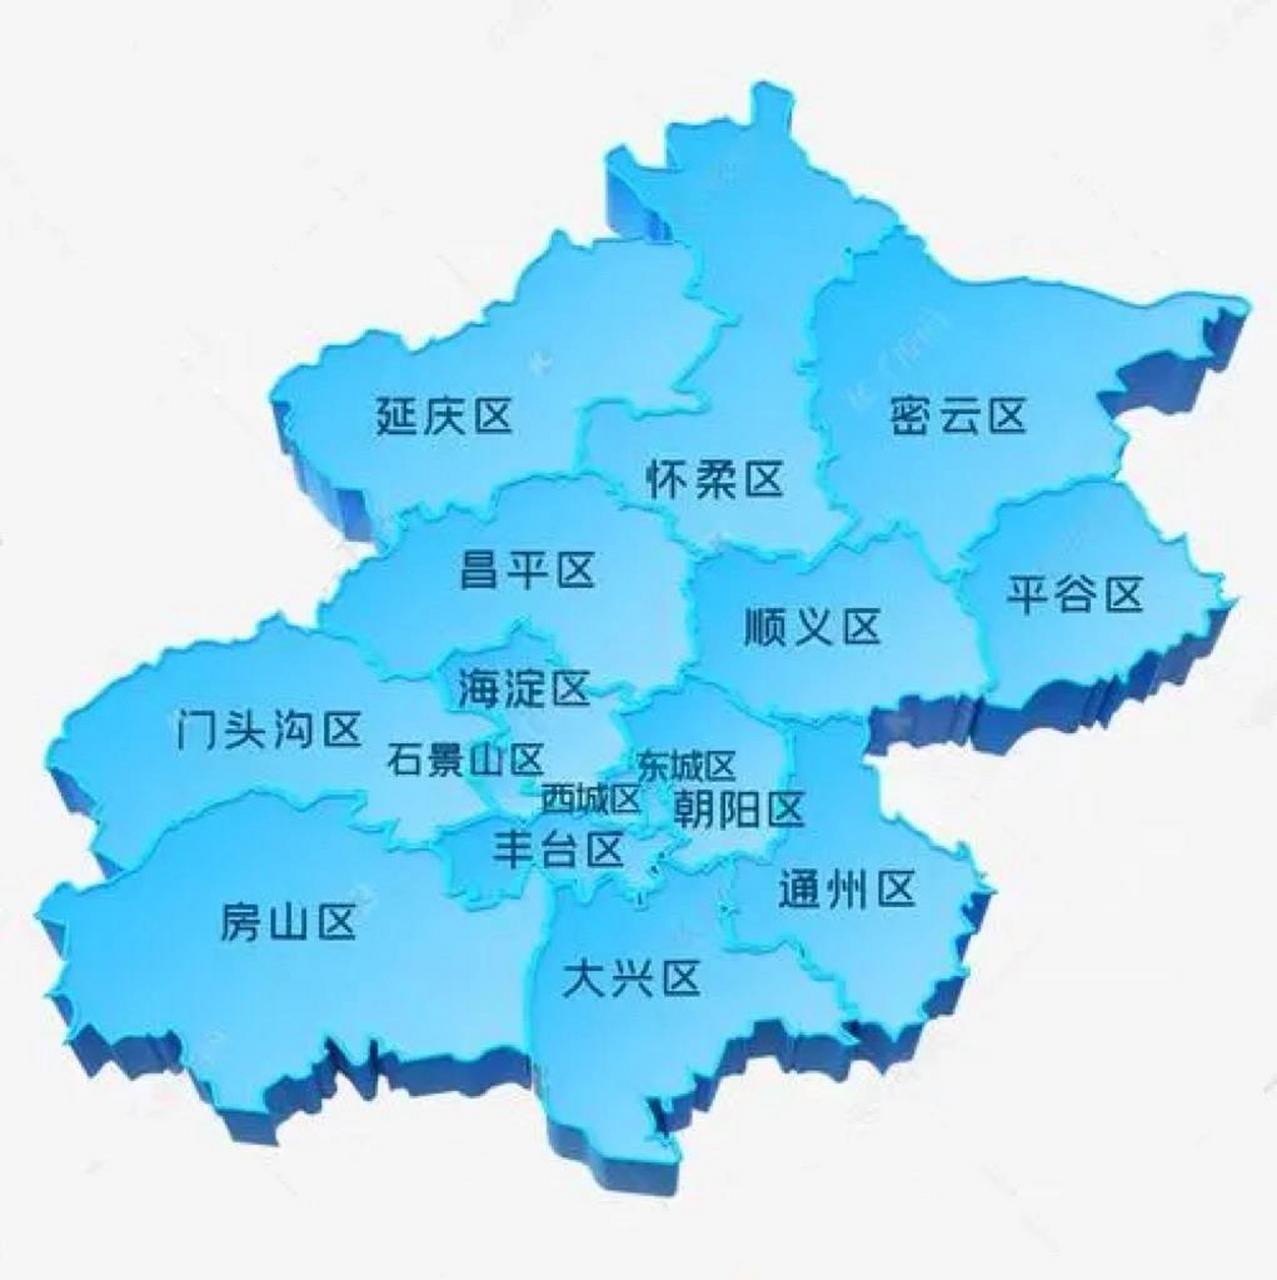 北京分区 区域划分图片